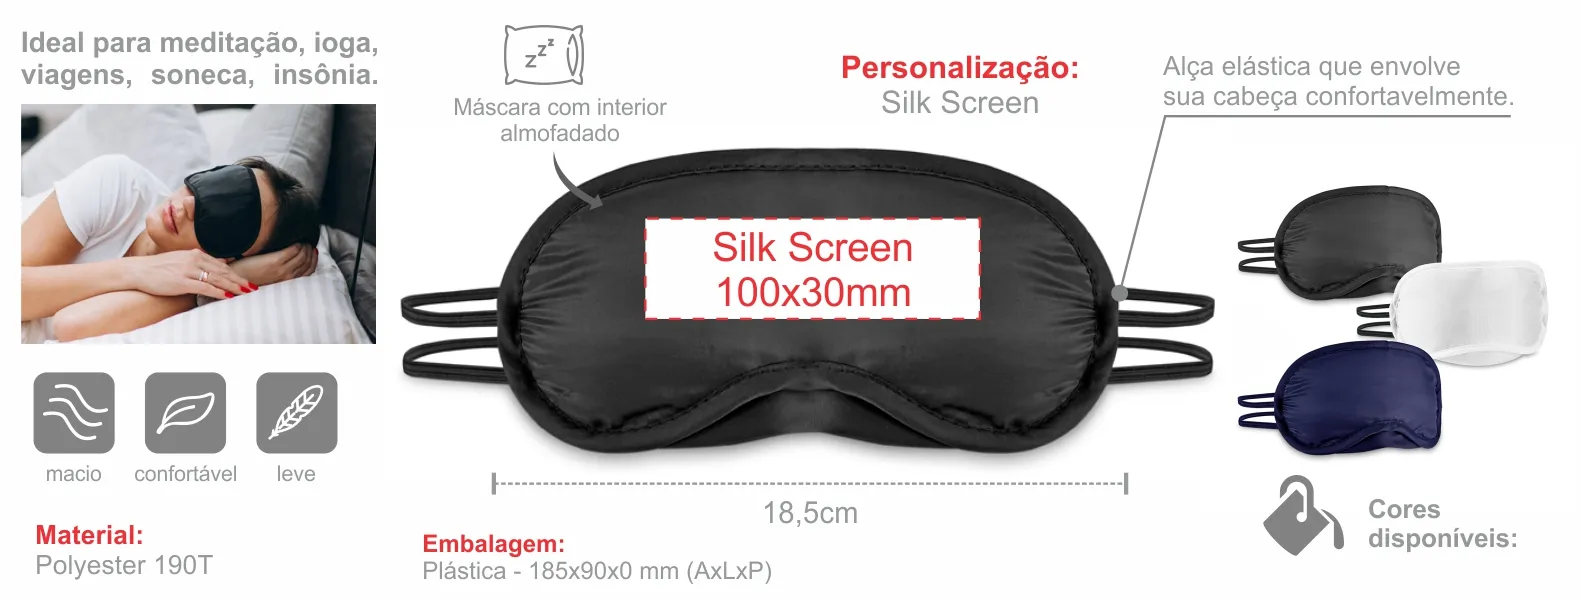 Máscara para dormir em Polyester 190T preta. Conta com interior almofadado e duas alças.